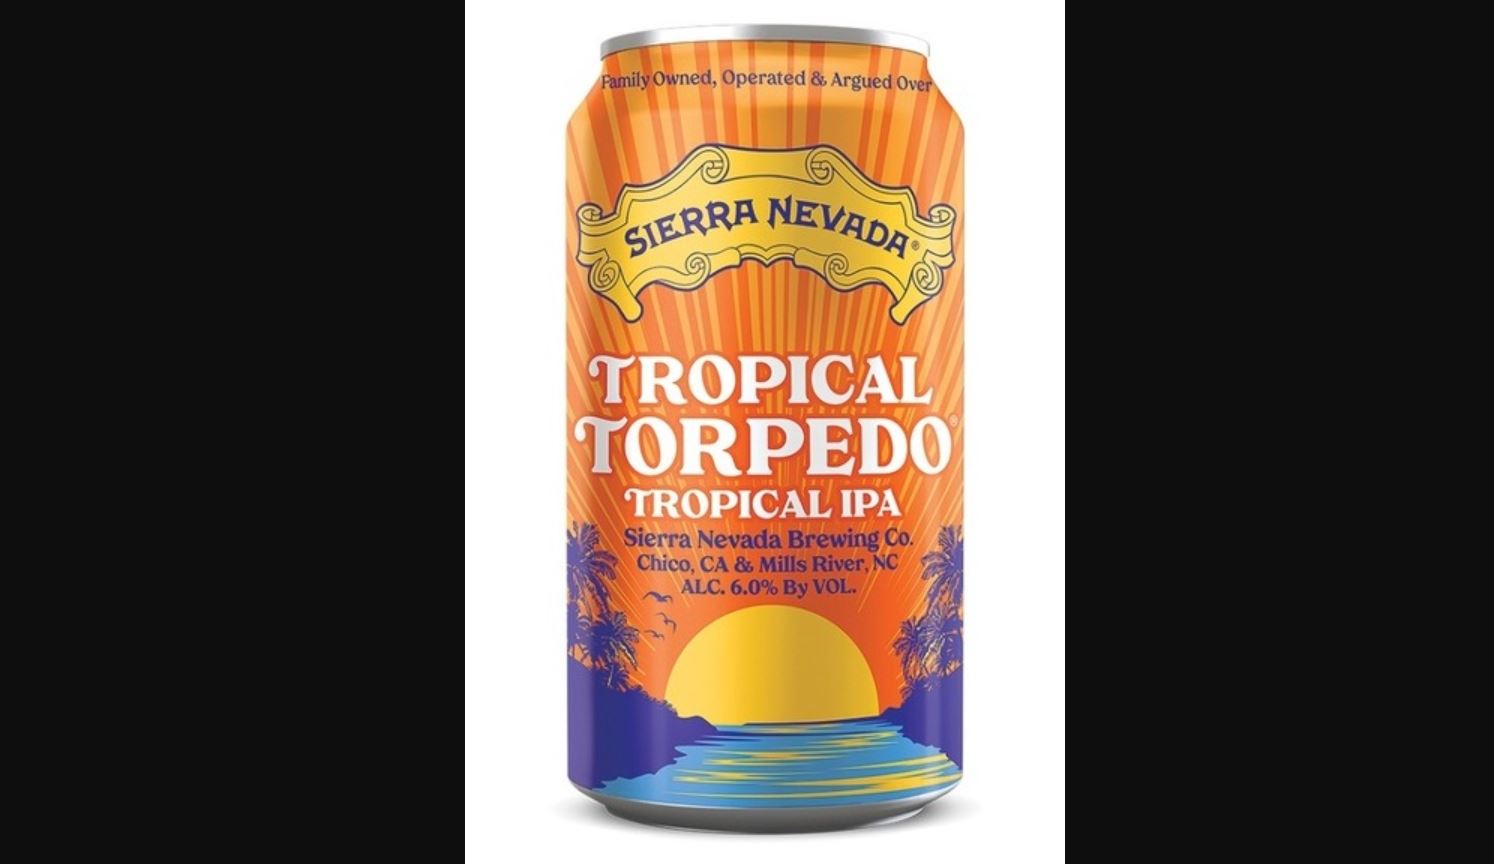 Tropical torpedo of the Sierra Nevada